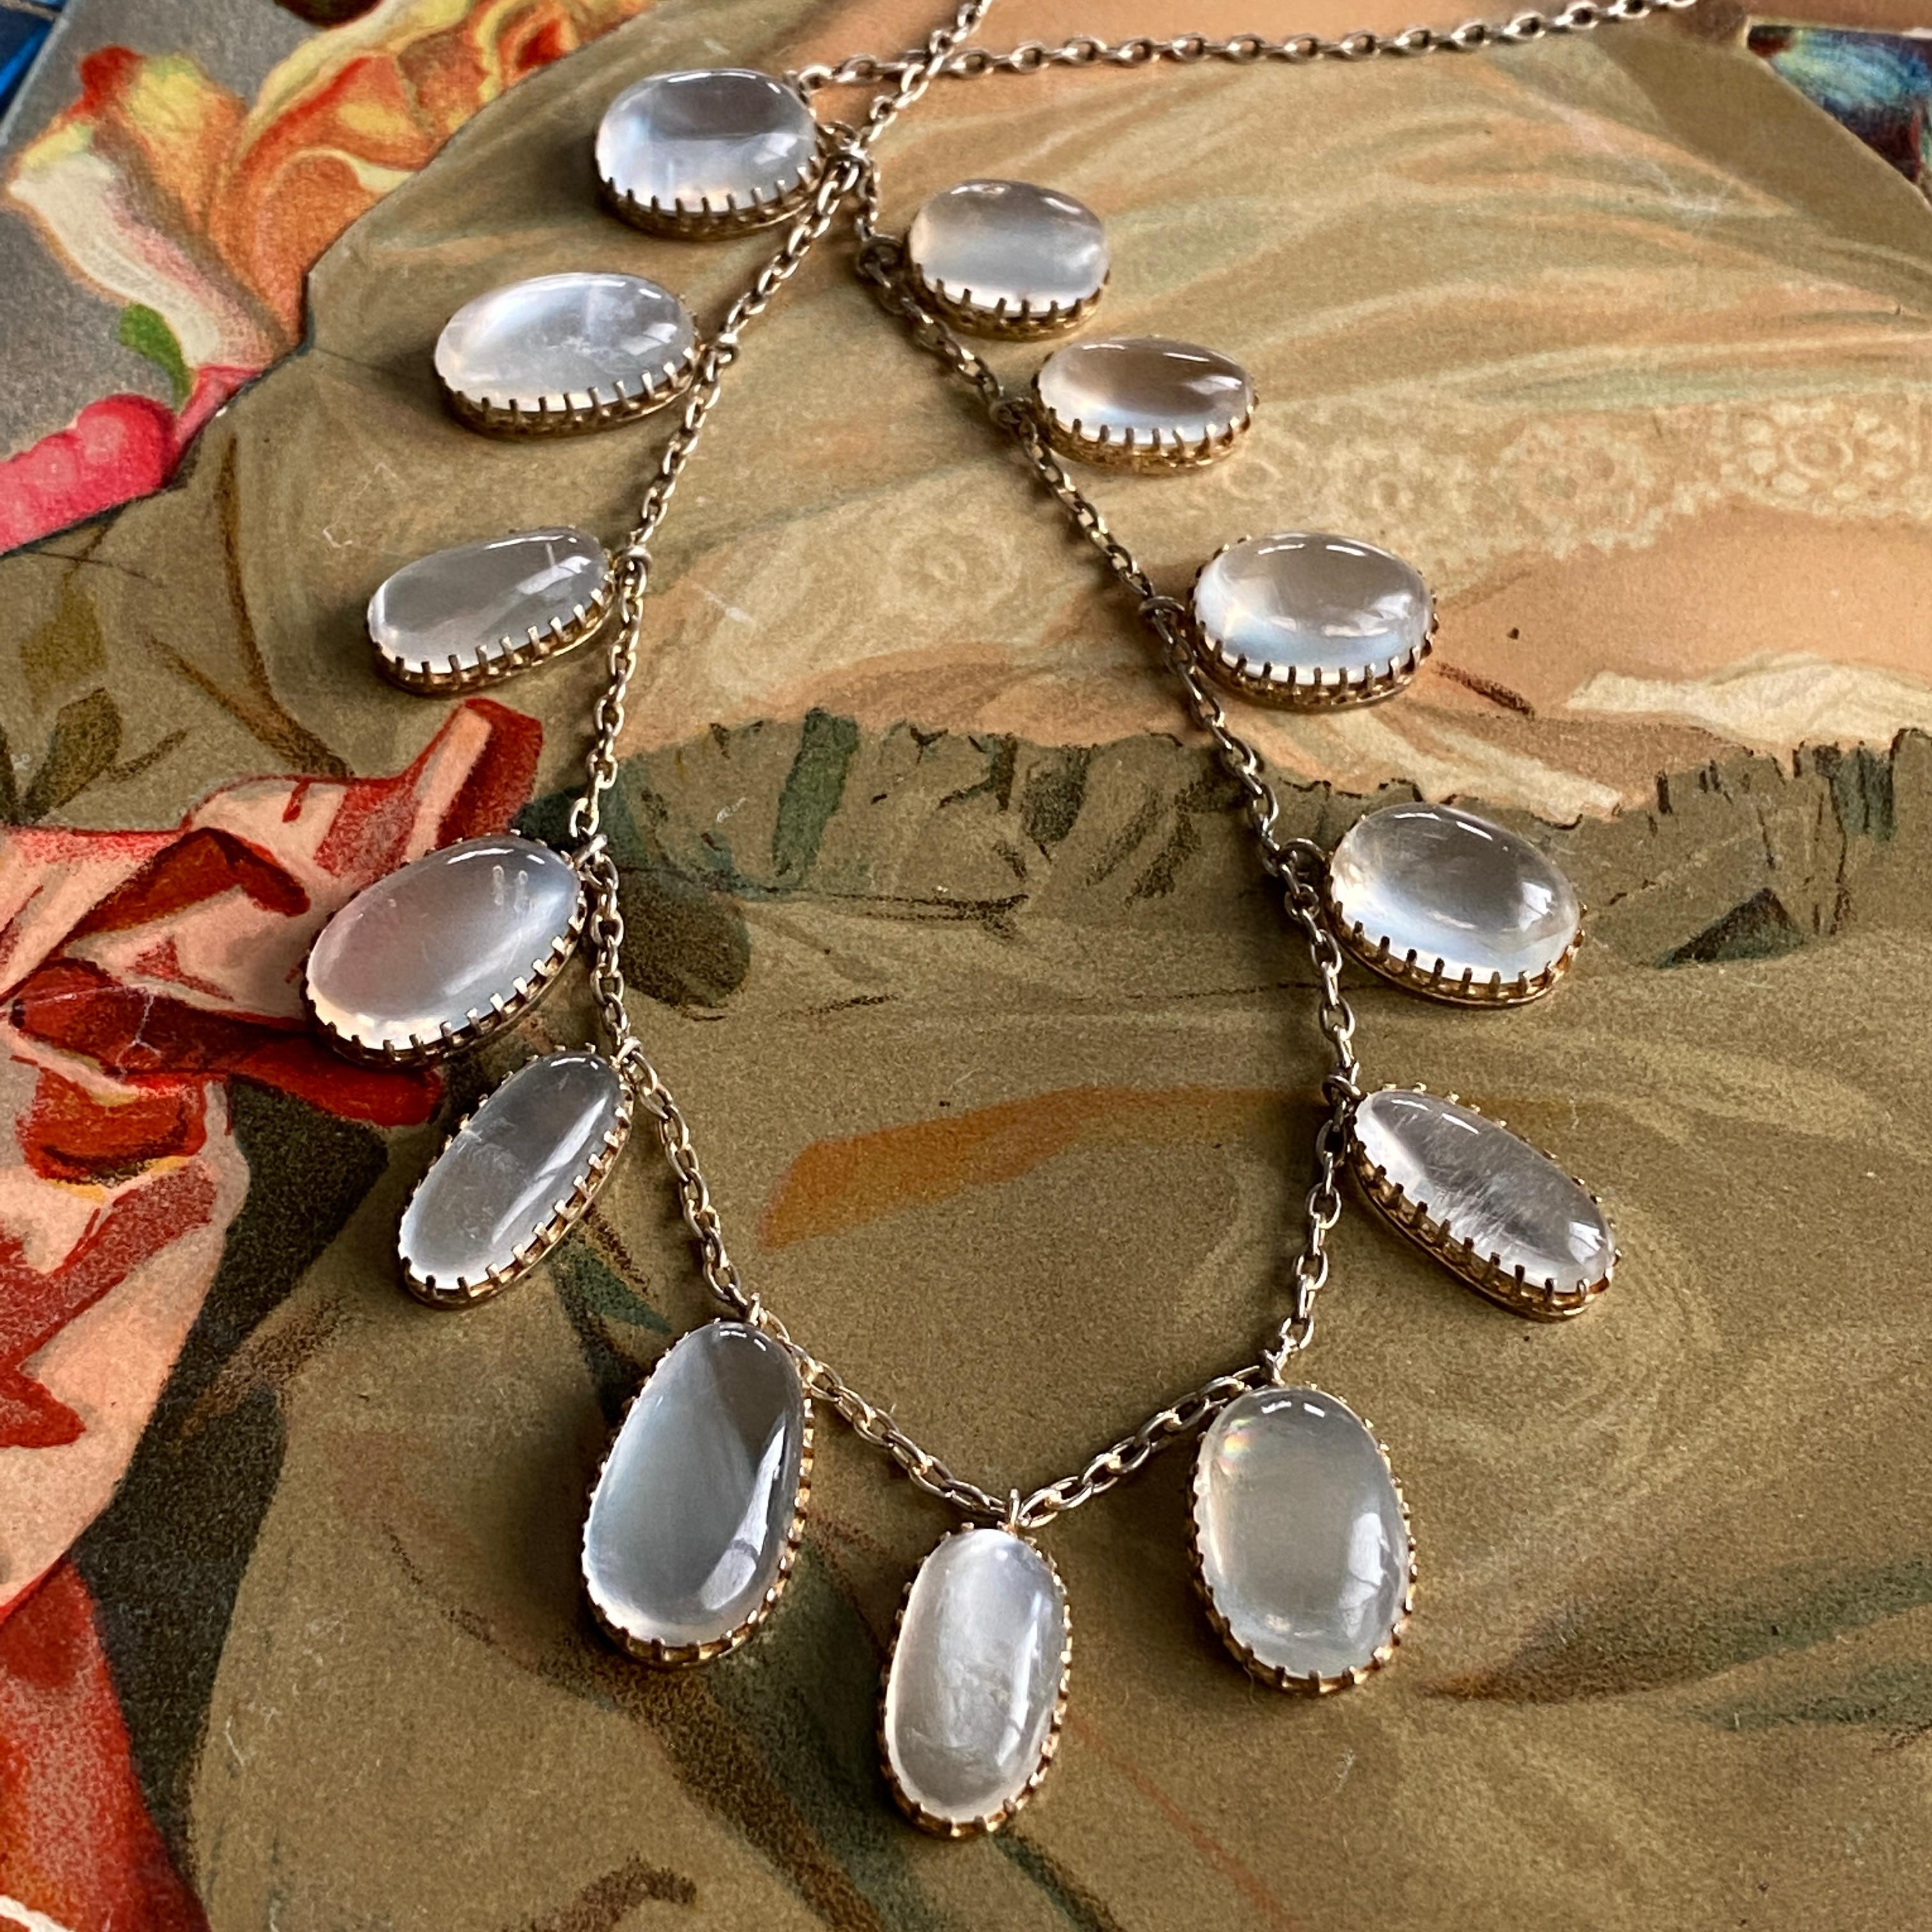 Einzelheiten:
Voller Charme! Süße edwardianische Mondstein-Halskette in Silbervergoldung. Diese Halskette hat eine feminine, silberne Goldkette mit unregelmäßigen, natürlichen Mondsteintropfen mit Cabochon-Abstufung. Die Fassungen der Steine sind